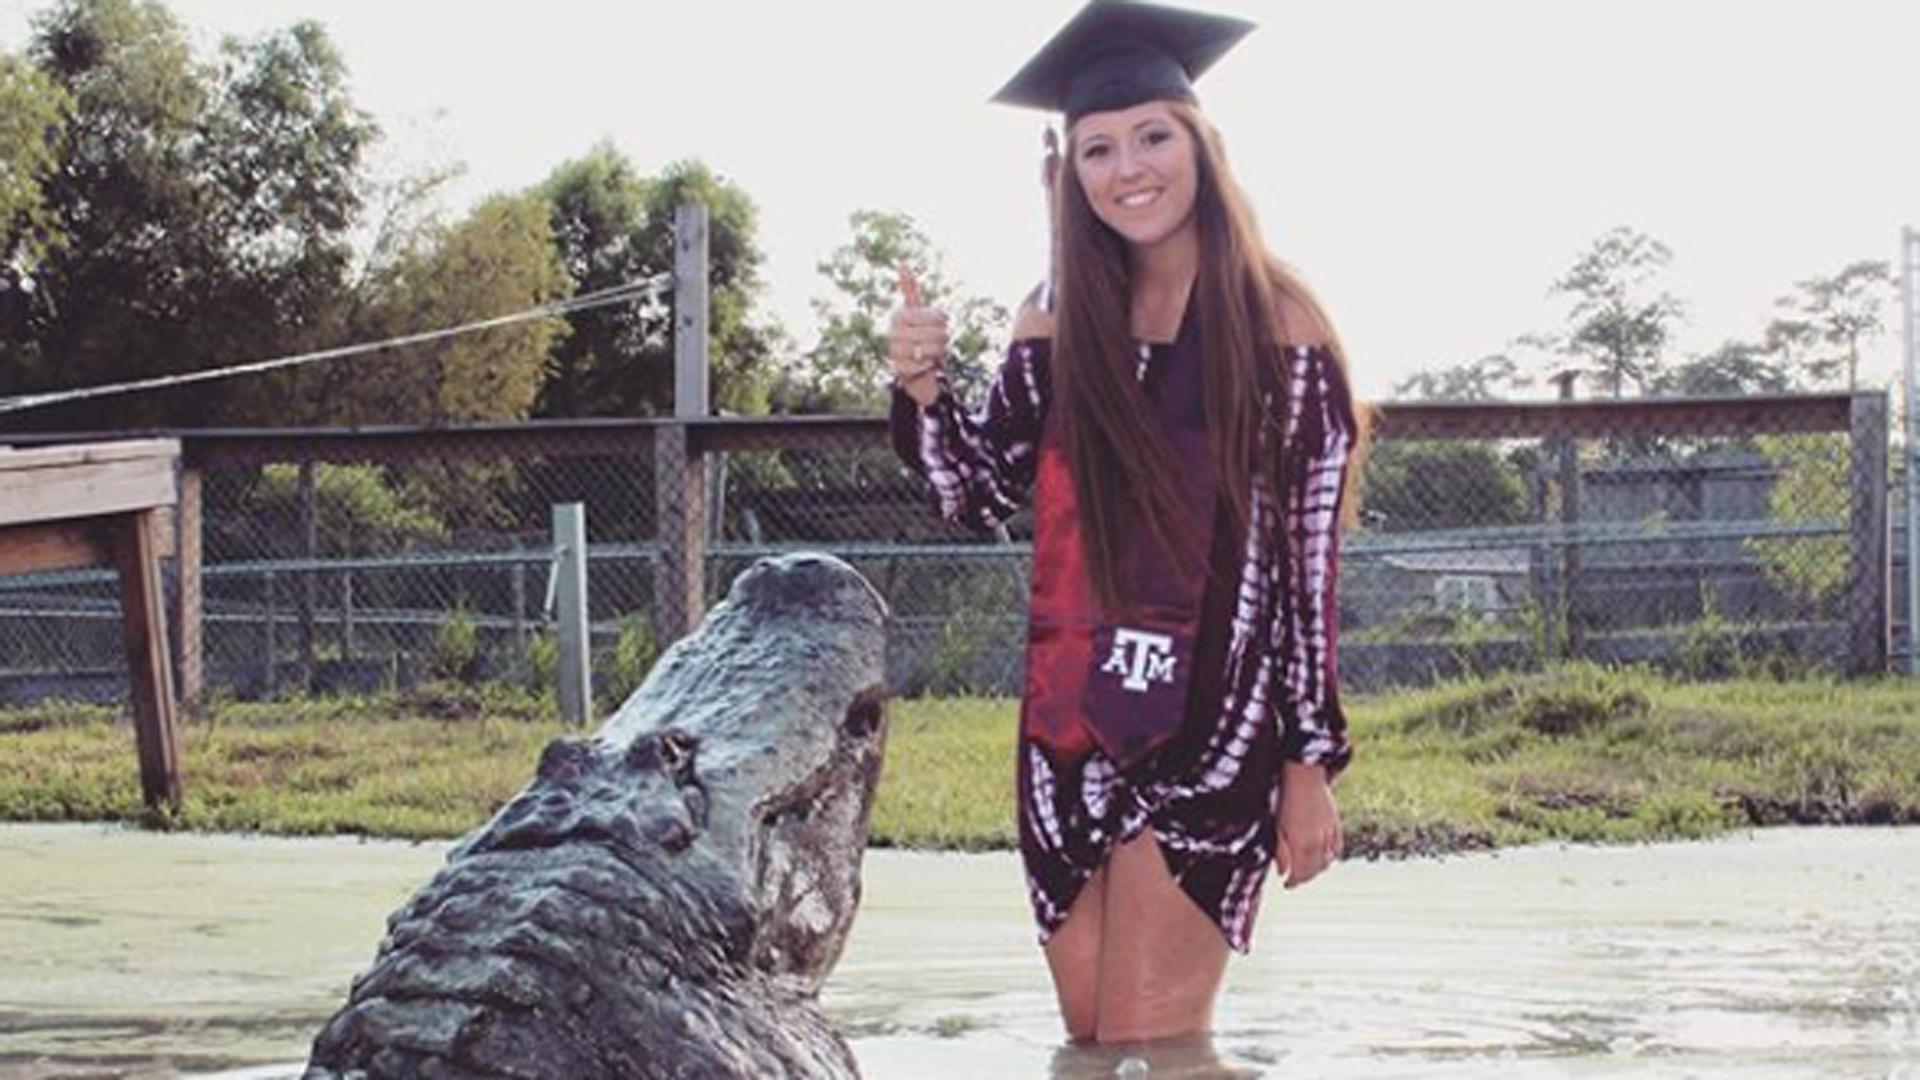 Una joven de Texas posa en su graduación junto a un inmenso cocodrilo